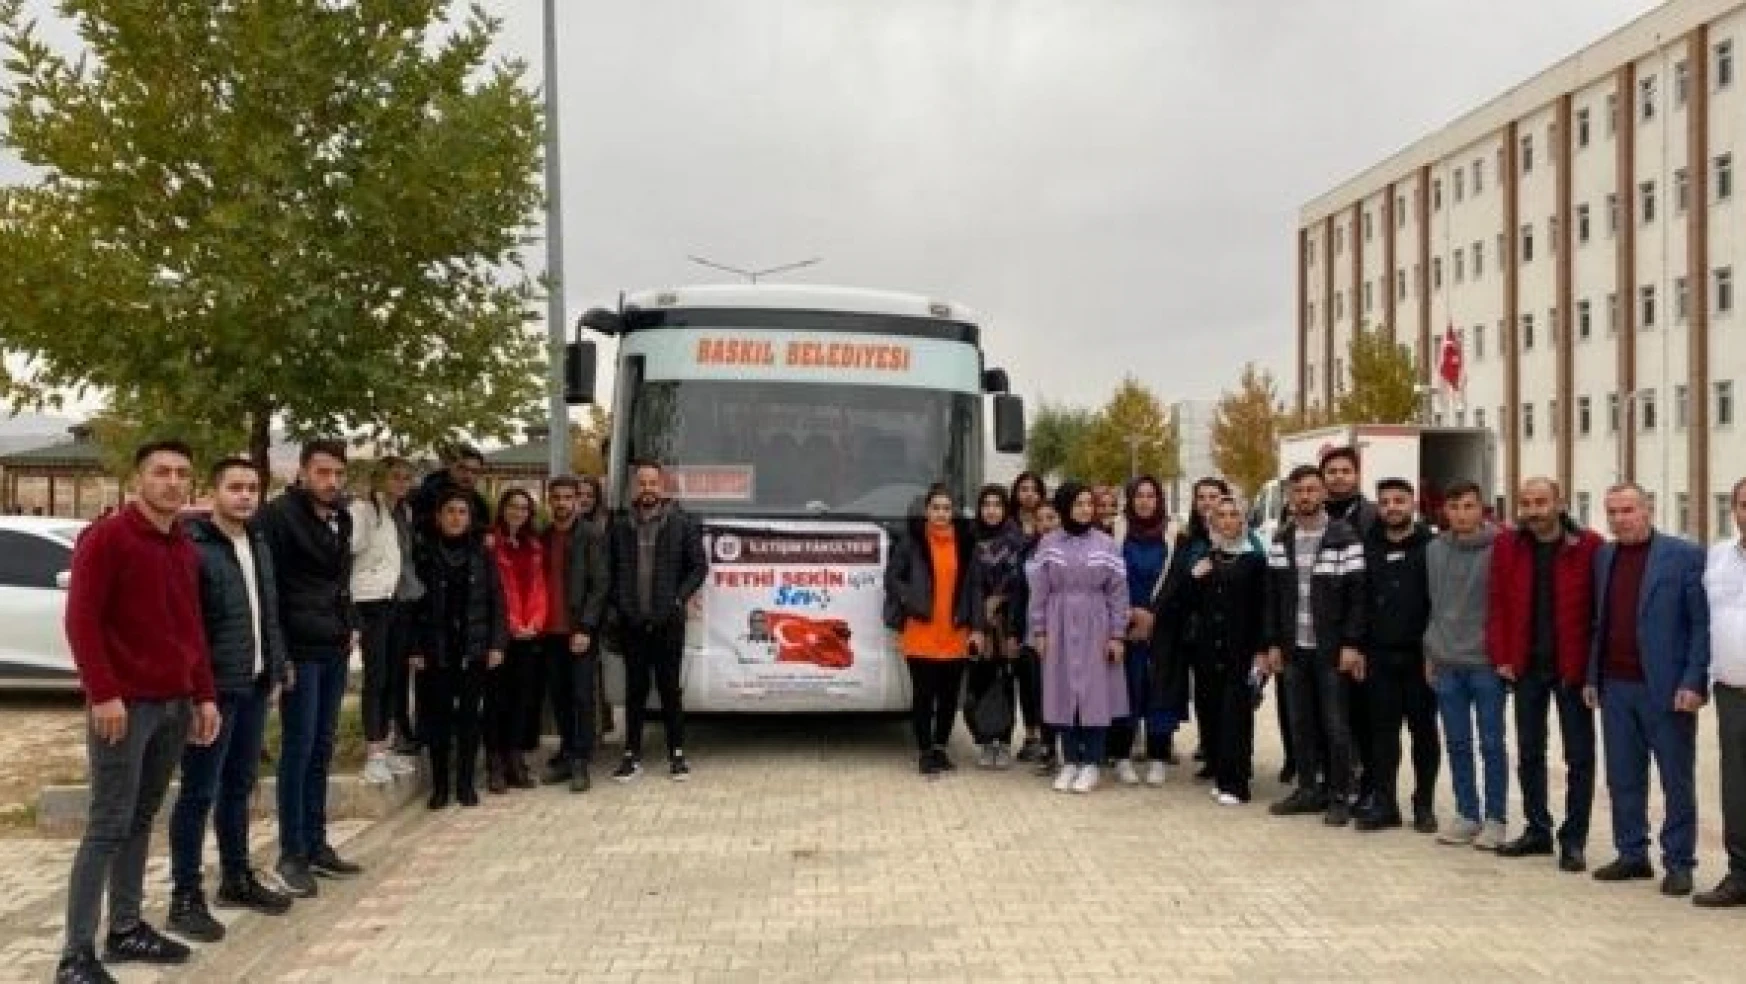 Elazığ'da üniversite öğrencileri 'Fethi Sekin için sev' sloganıyla etkinlik gerçekleştirdi